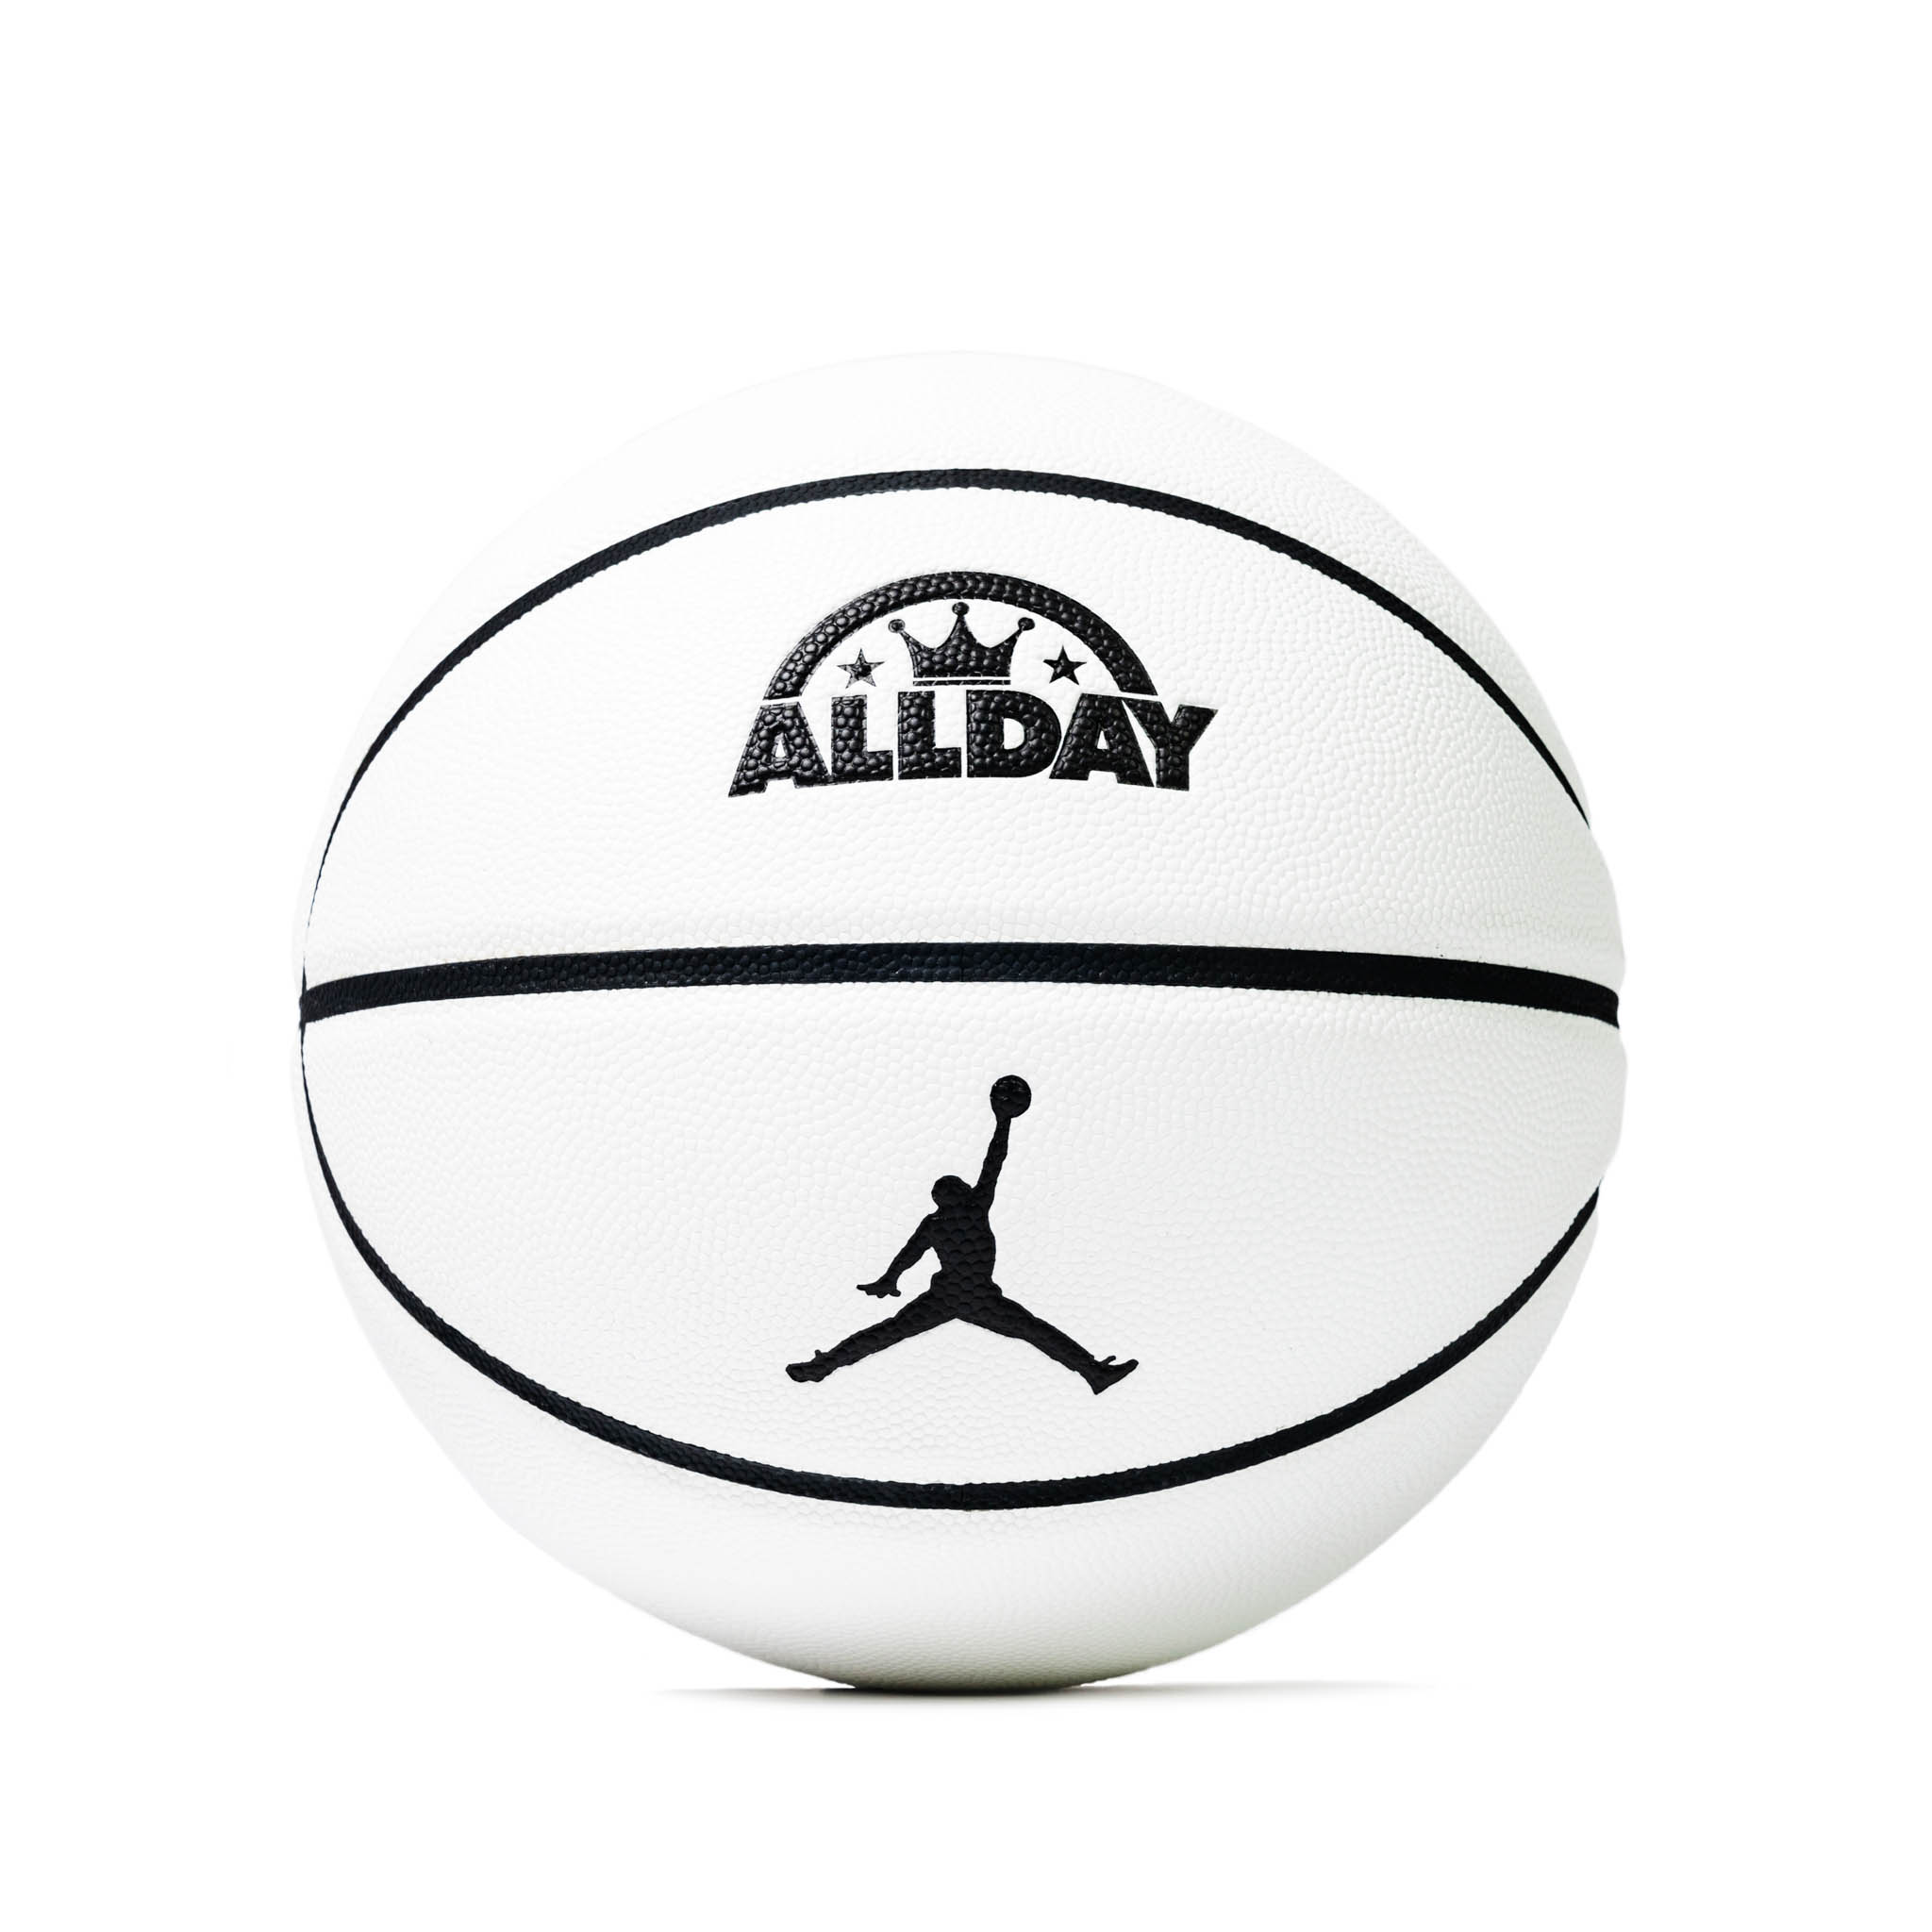 ジョーダン ブランドをフューチャーするtokyo 23がalldayをサポート Fly Basketball Culture Magazine バスケットボール ファッション カルチャー マガジン